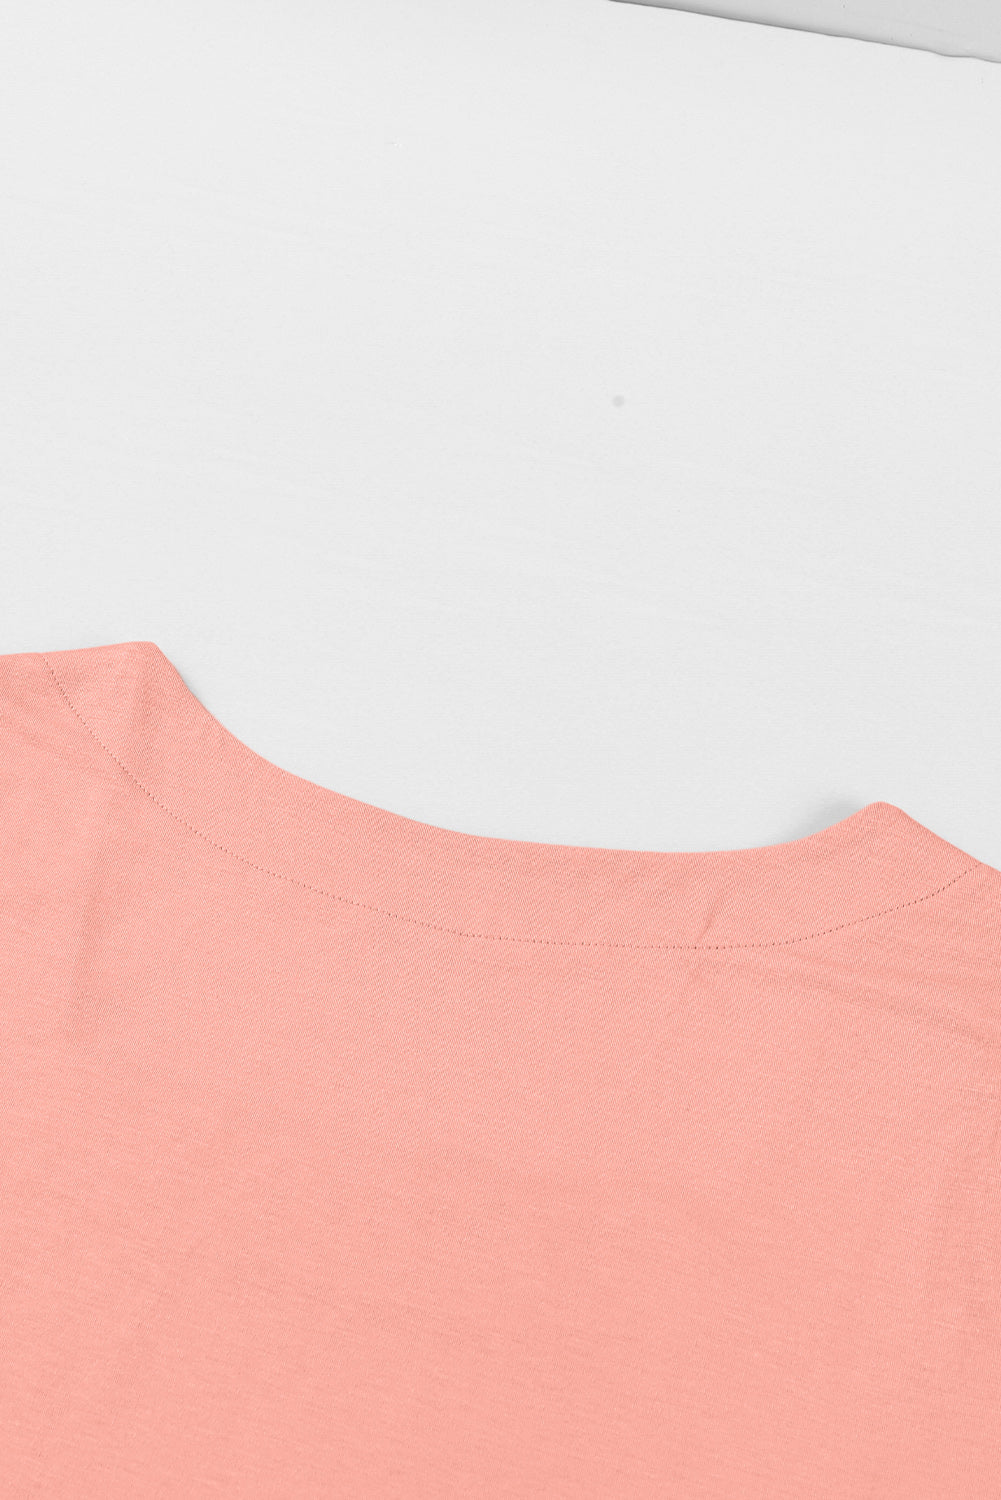 Ružičasta majica s rukavima i kvadratnim ovratnikom veće veličine